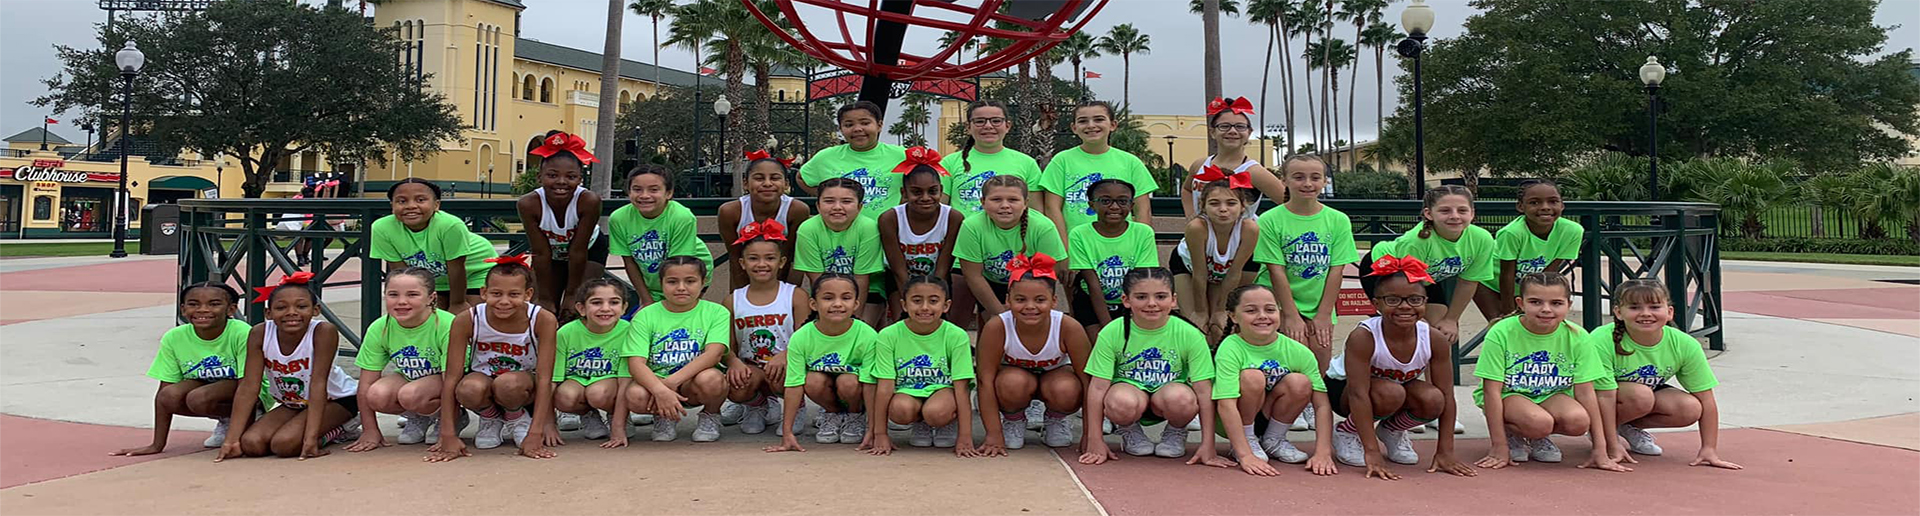 Derby and West Haven Jr Pee Wee Cheerleadersin Disney World!